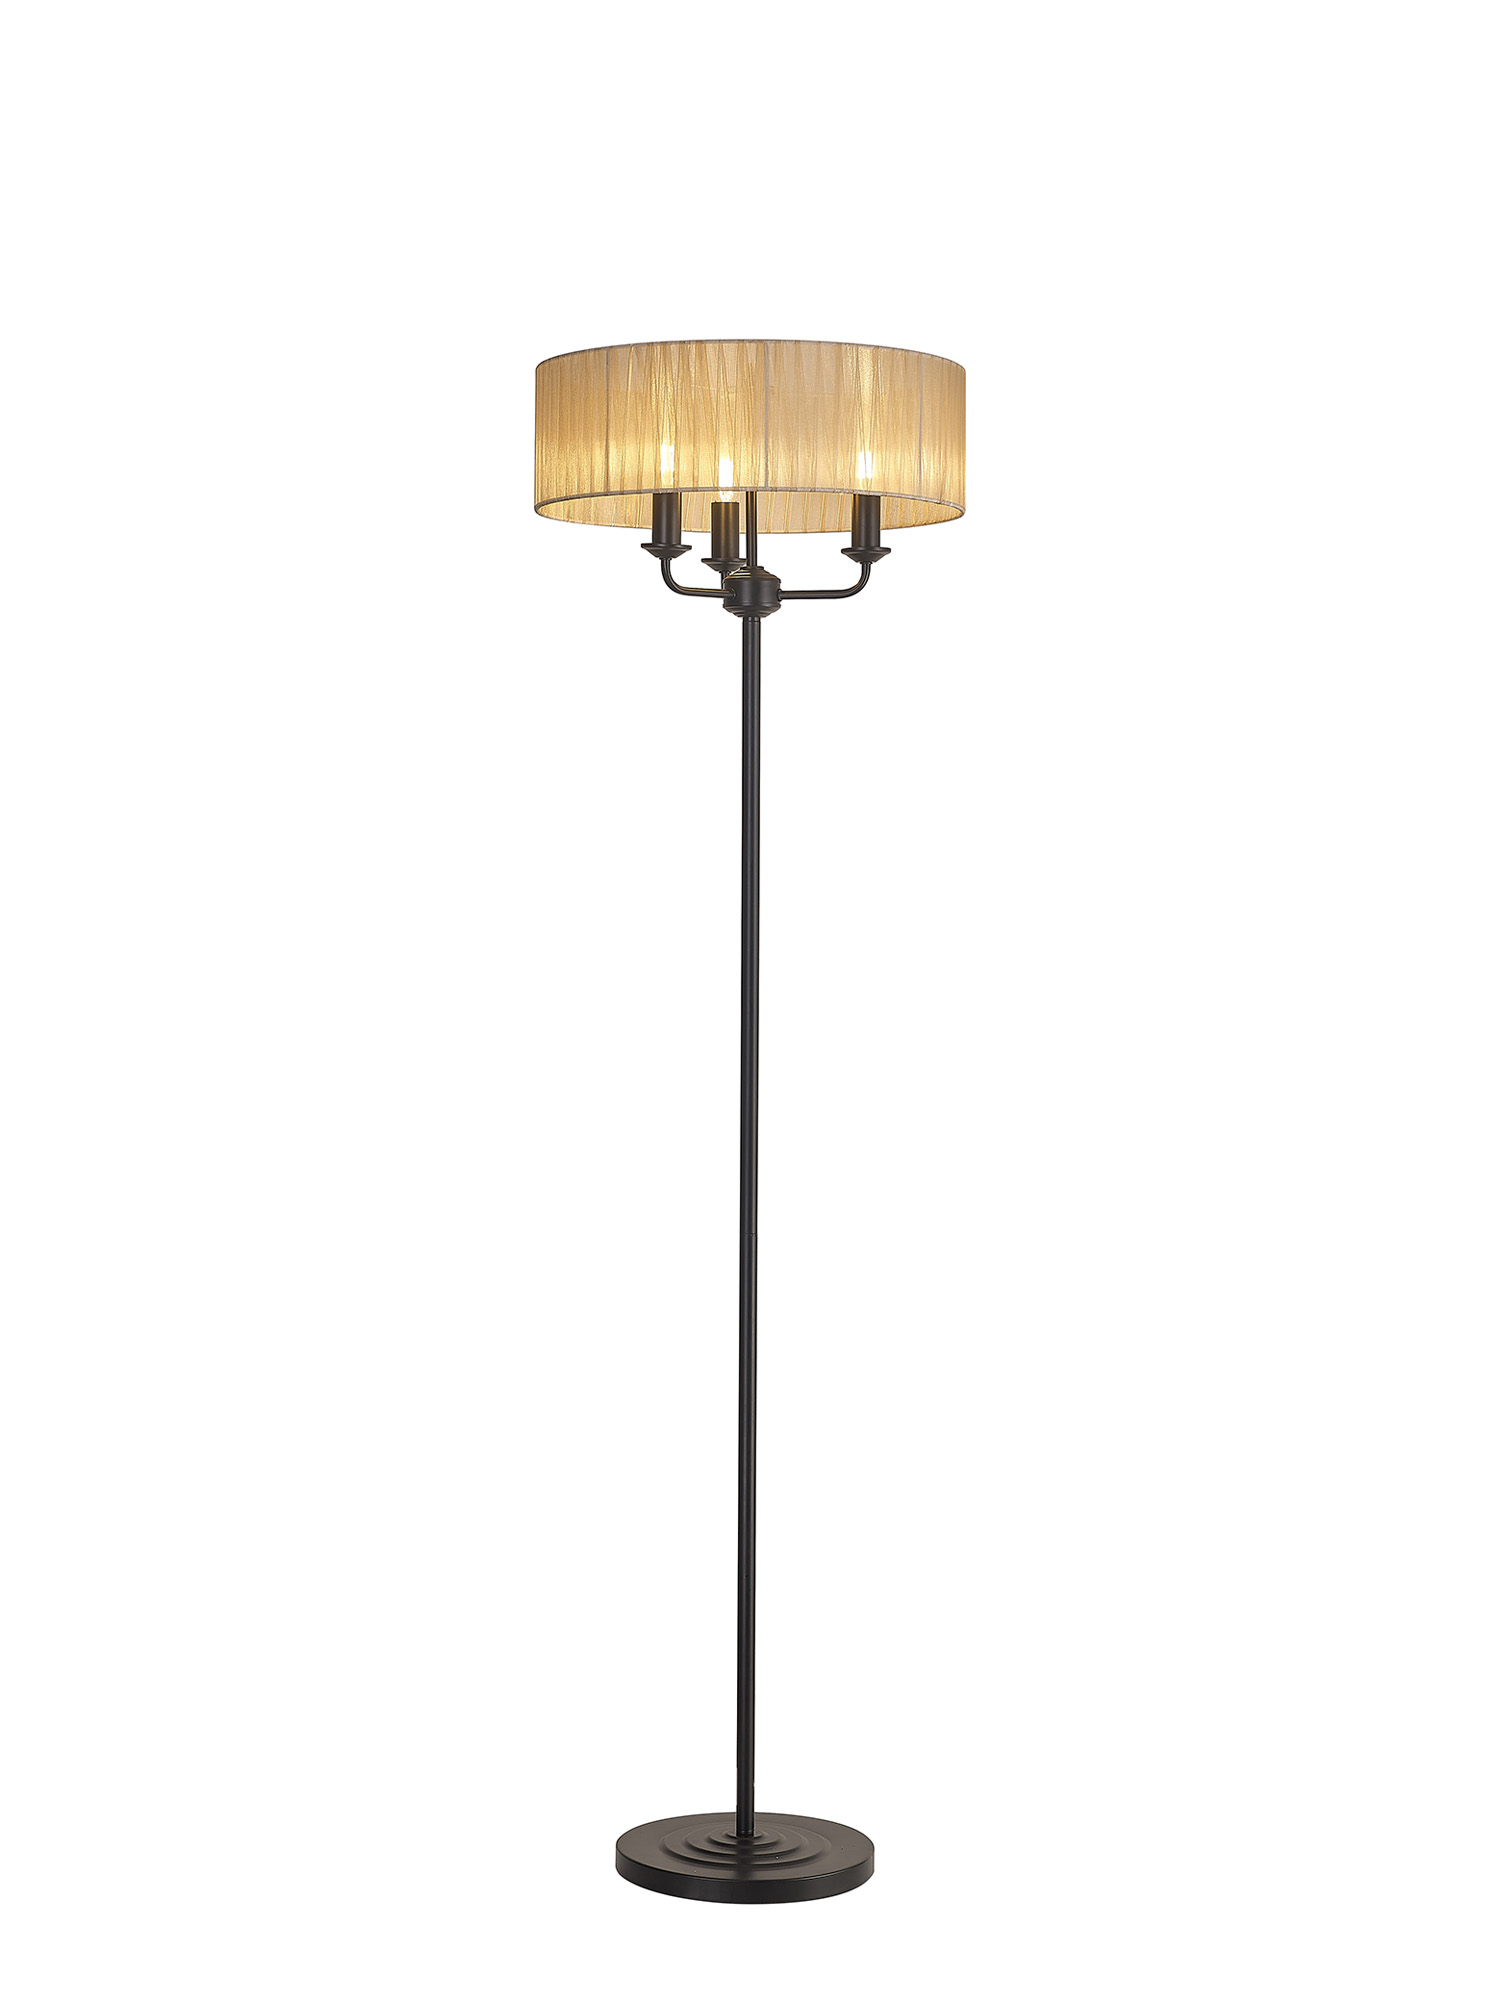 DK1061  Banyan 45cm 3 Light Floor Lamp Matt Black, Soft Bronze